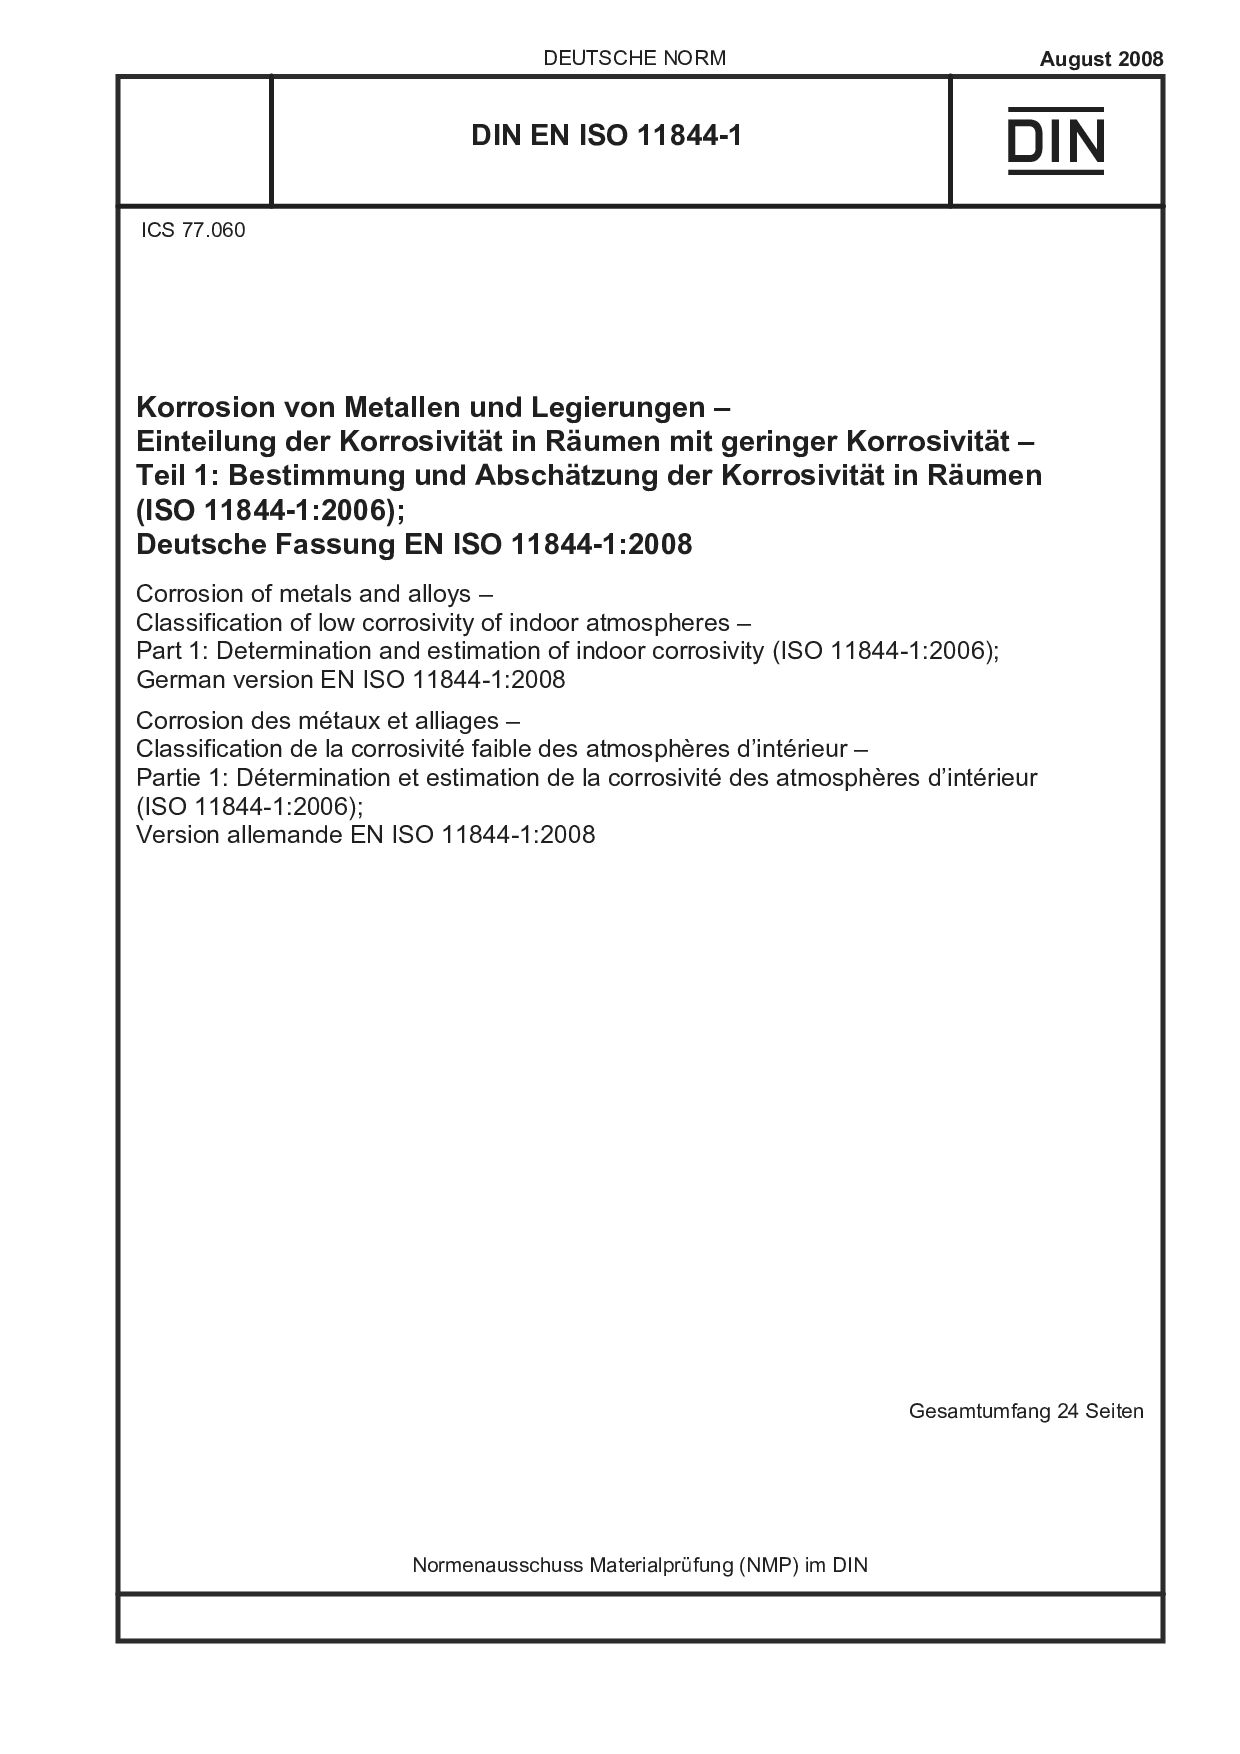 DIN EN ISO 11844-1:2008封面图